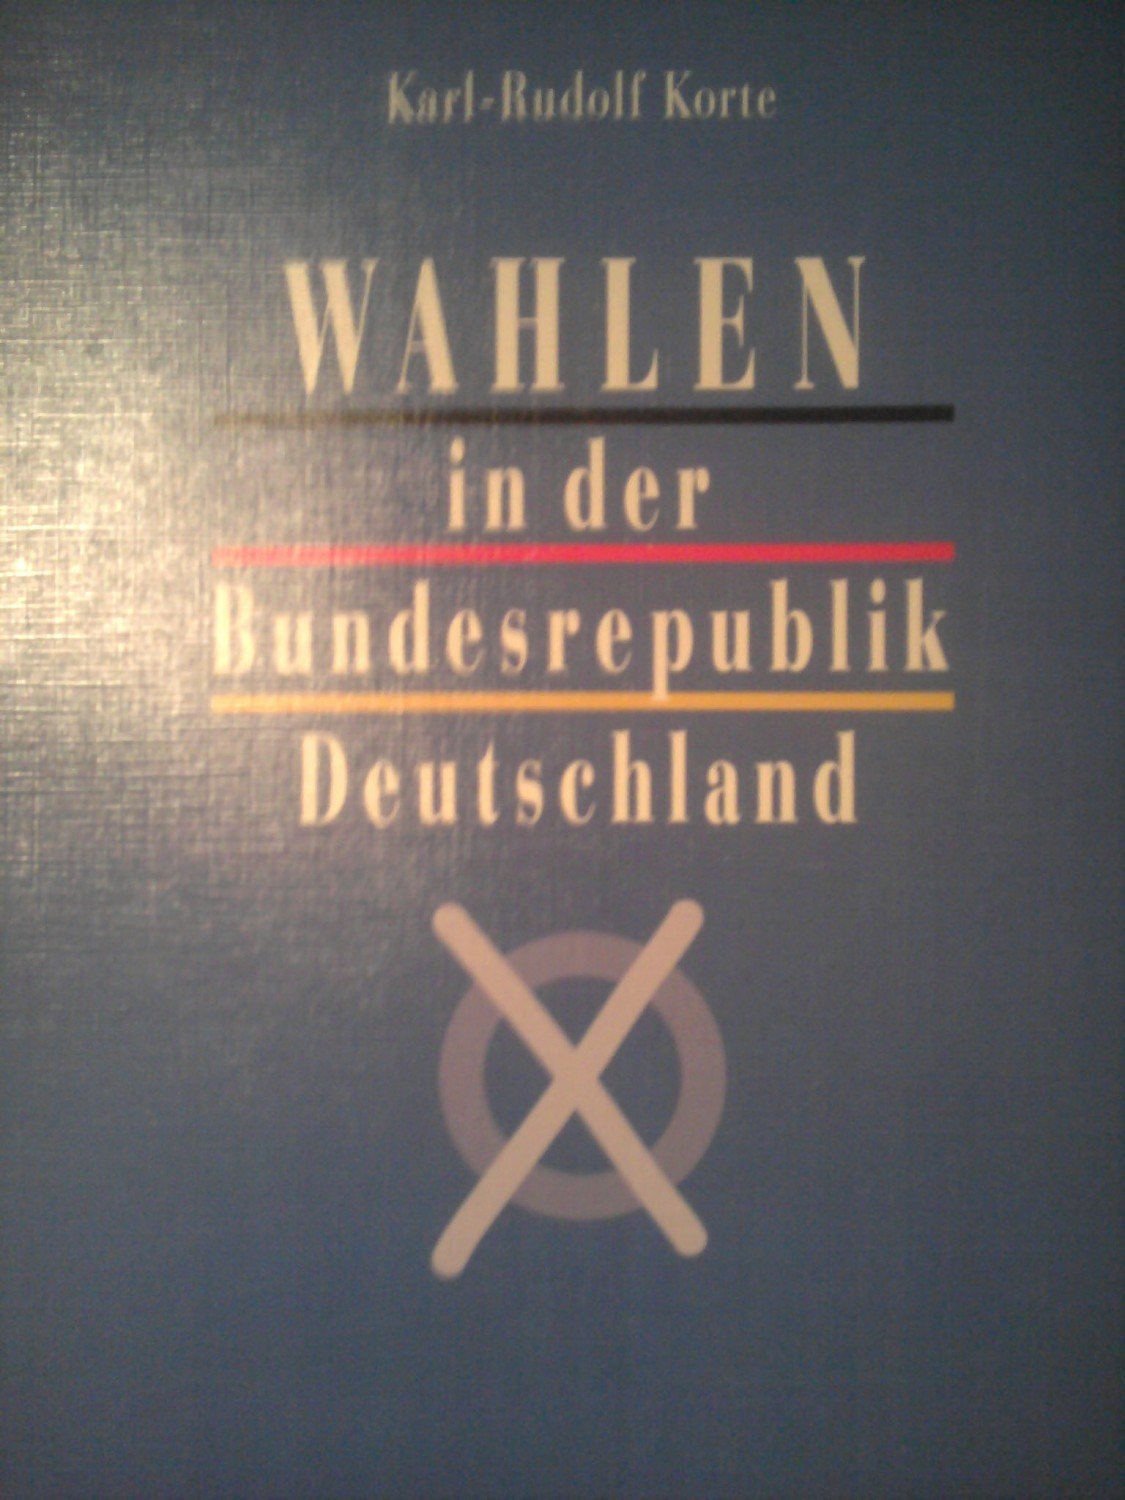 Wahlen In Der Bundesrepublik Deutschland Karl Rudolf Korte Buch Gebraucht Kaufen A02gcnnh01zzo